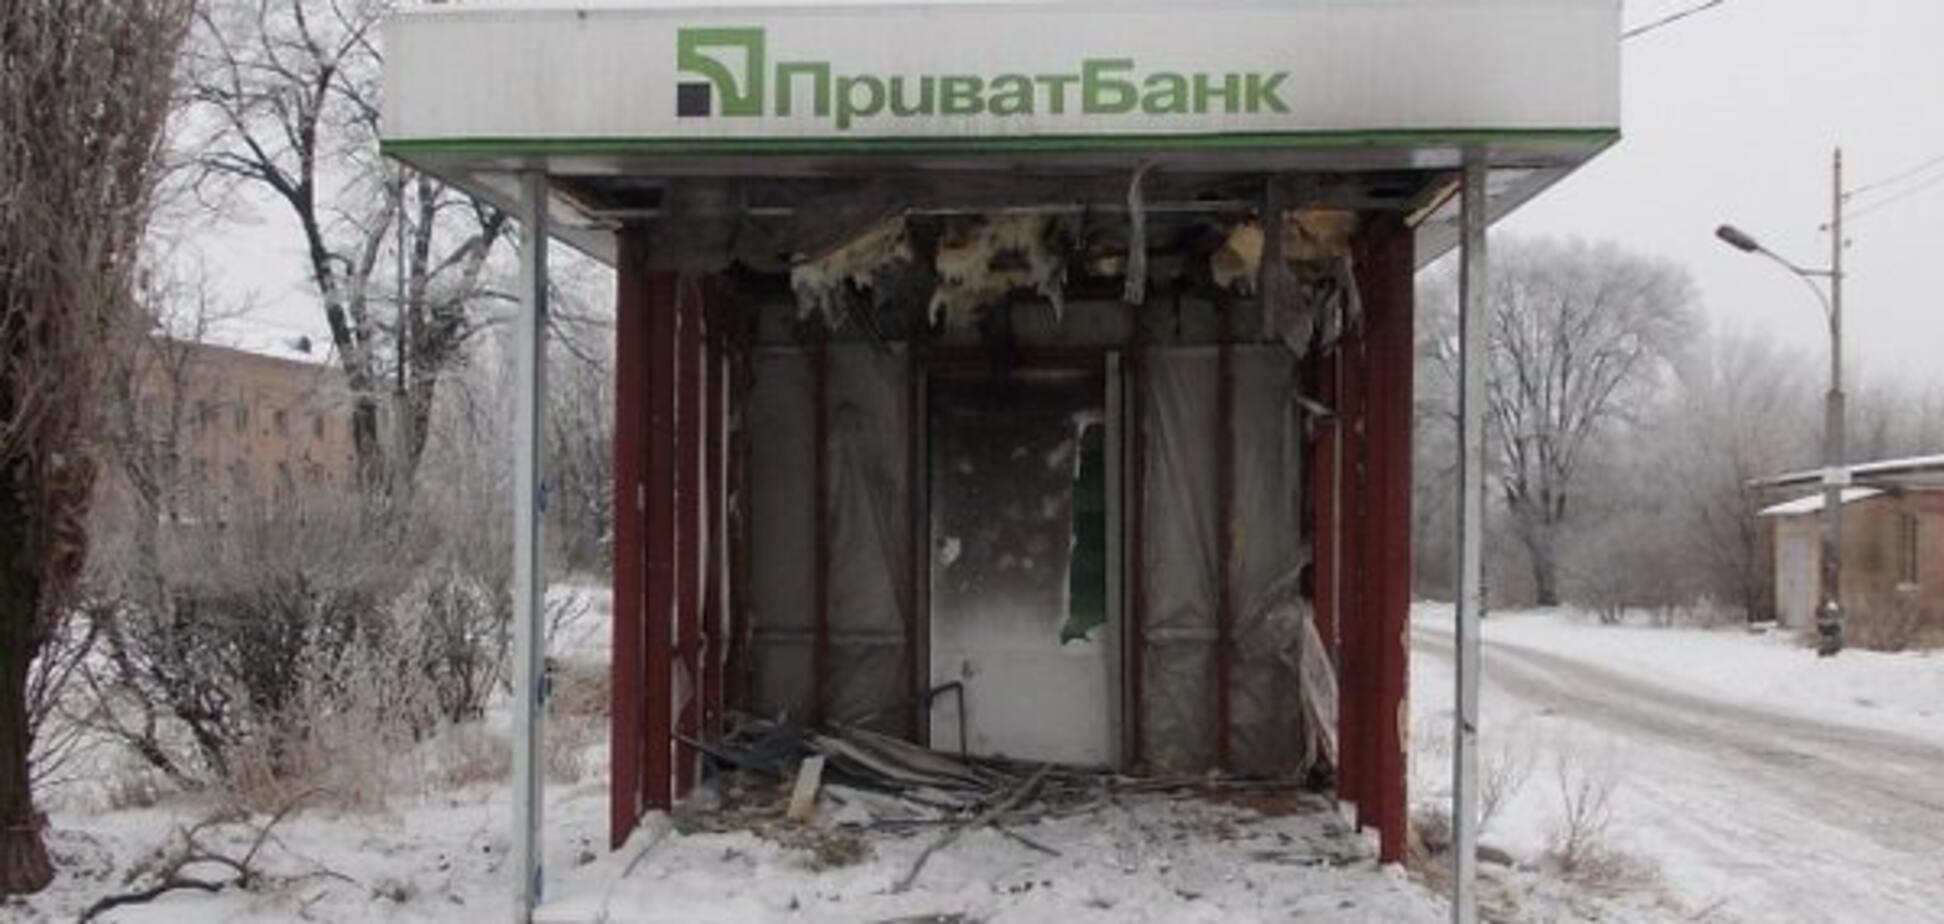 А деньги откуда брать будут? Террористы изуродовали банкомат в Макеевке. Фотофакт